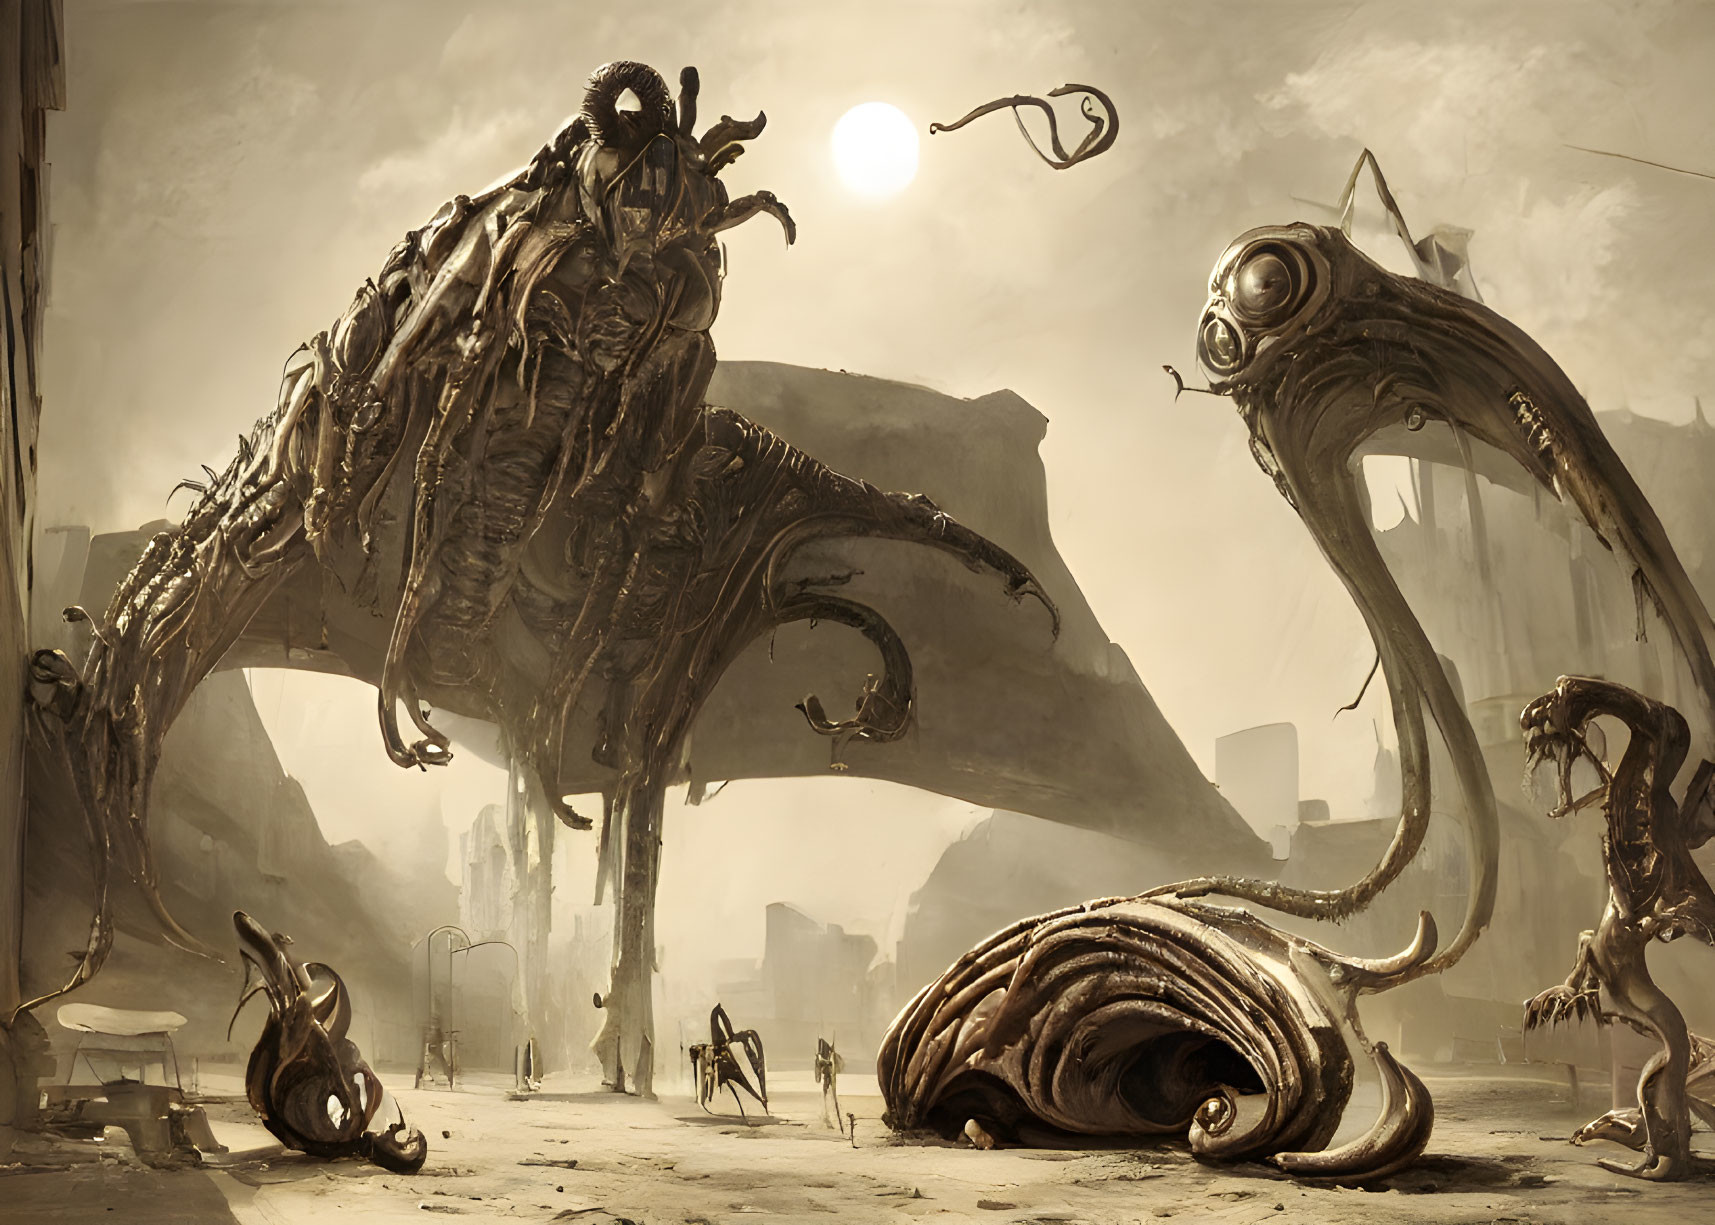 Dystopian scene with alien creatures and humanoid figures in ruins